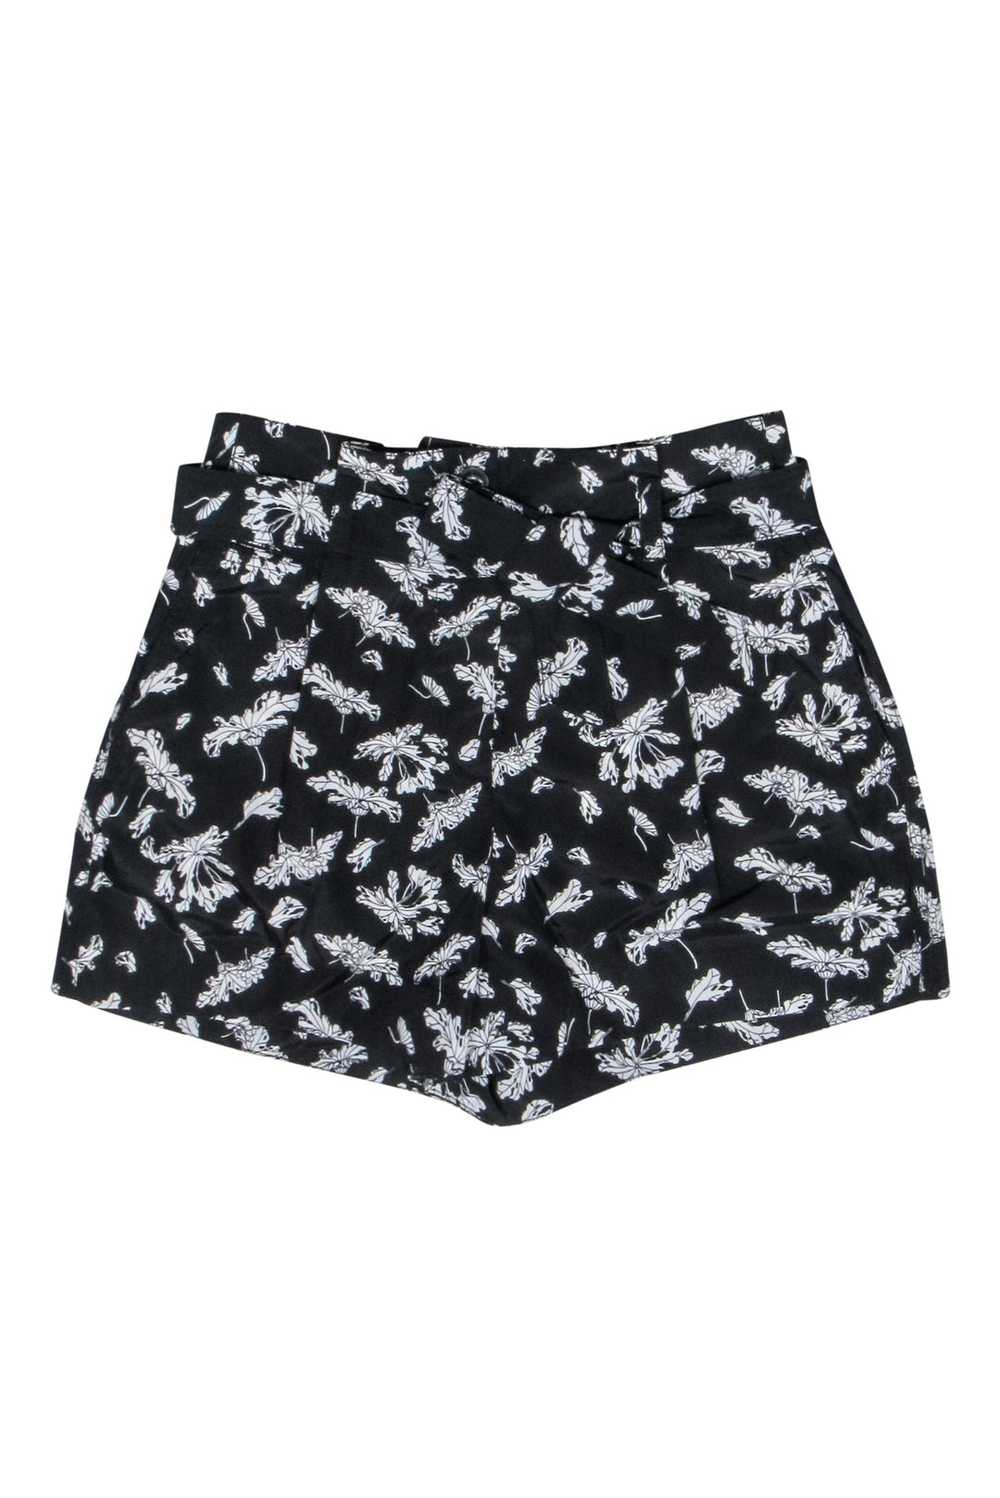 Rag & Bone - Black & White Floral Belted Shorts S… - image 1